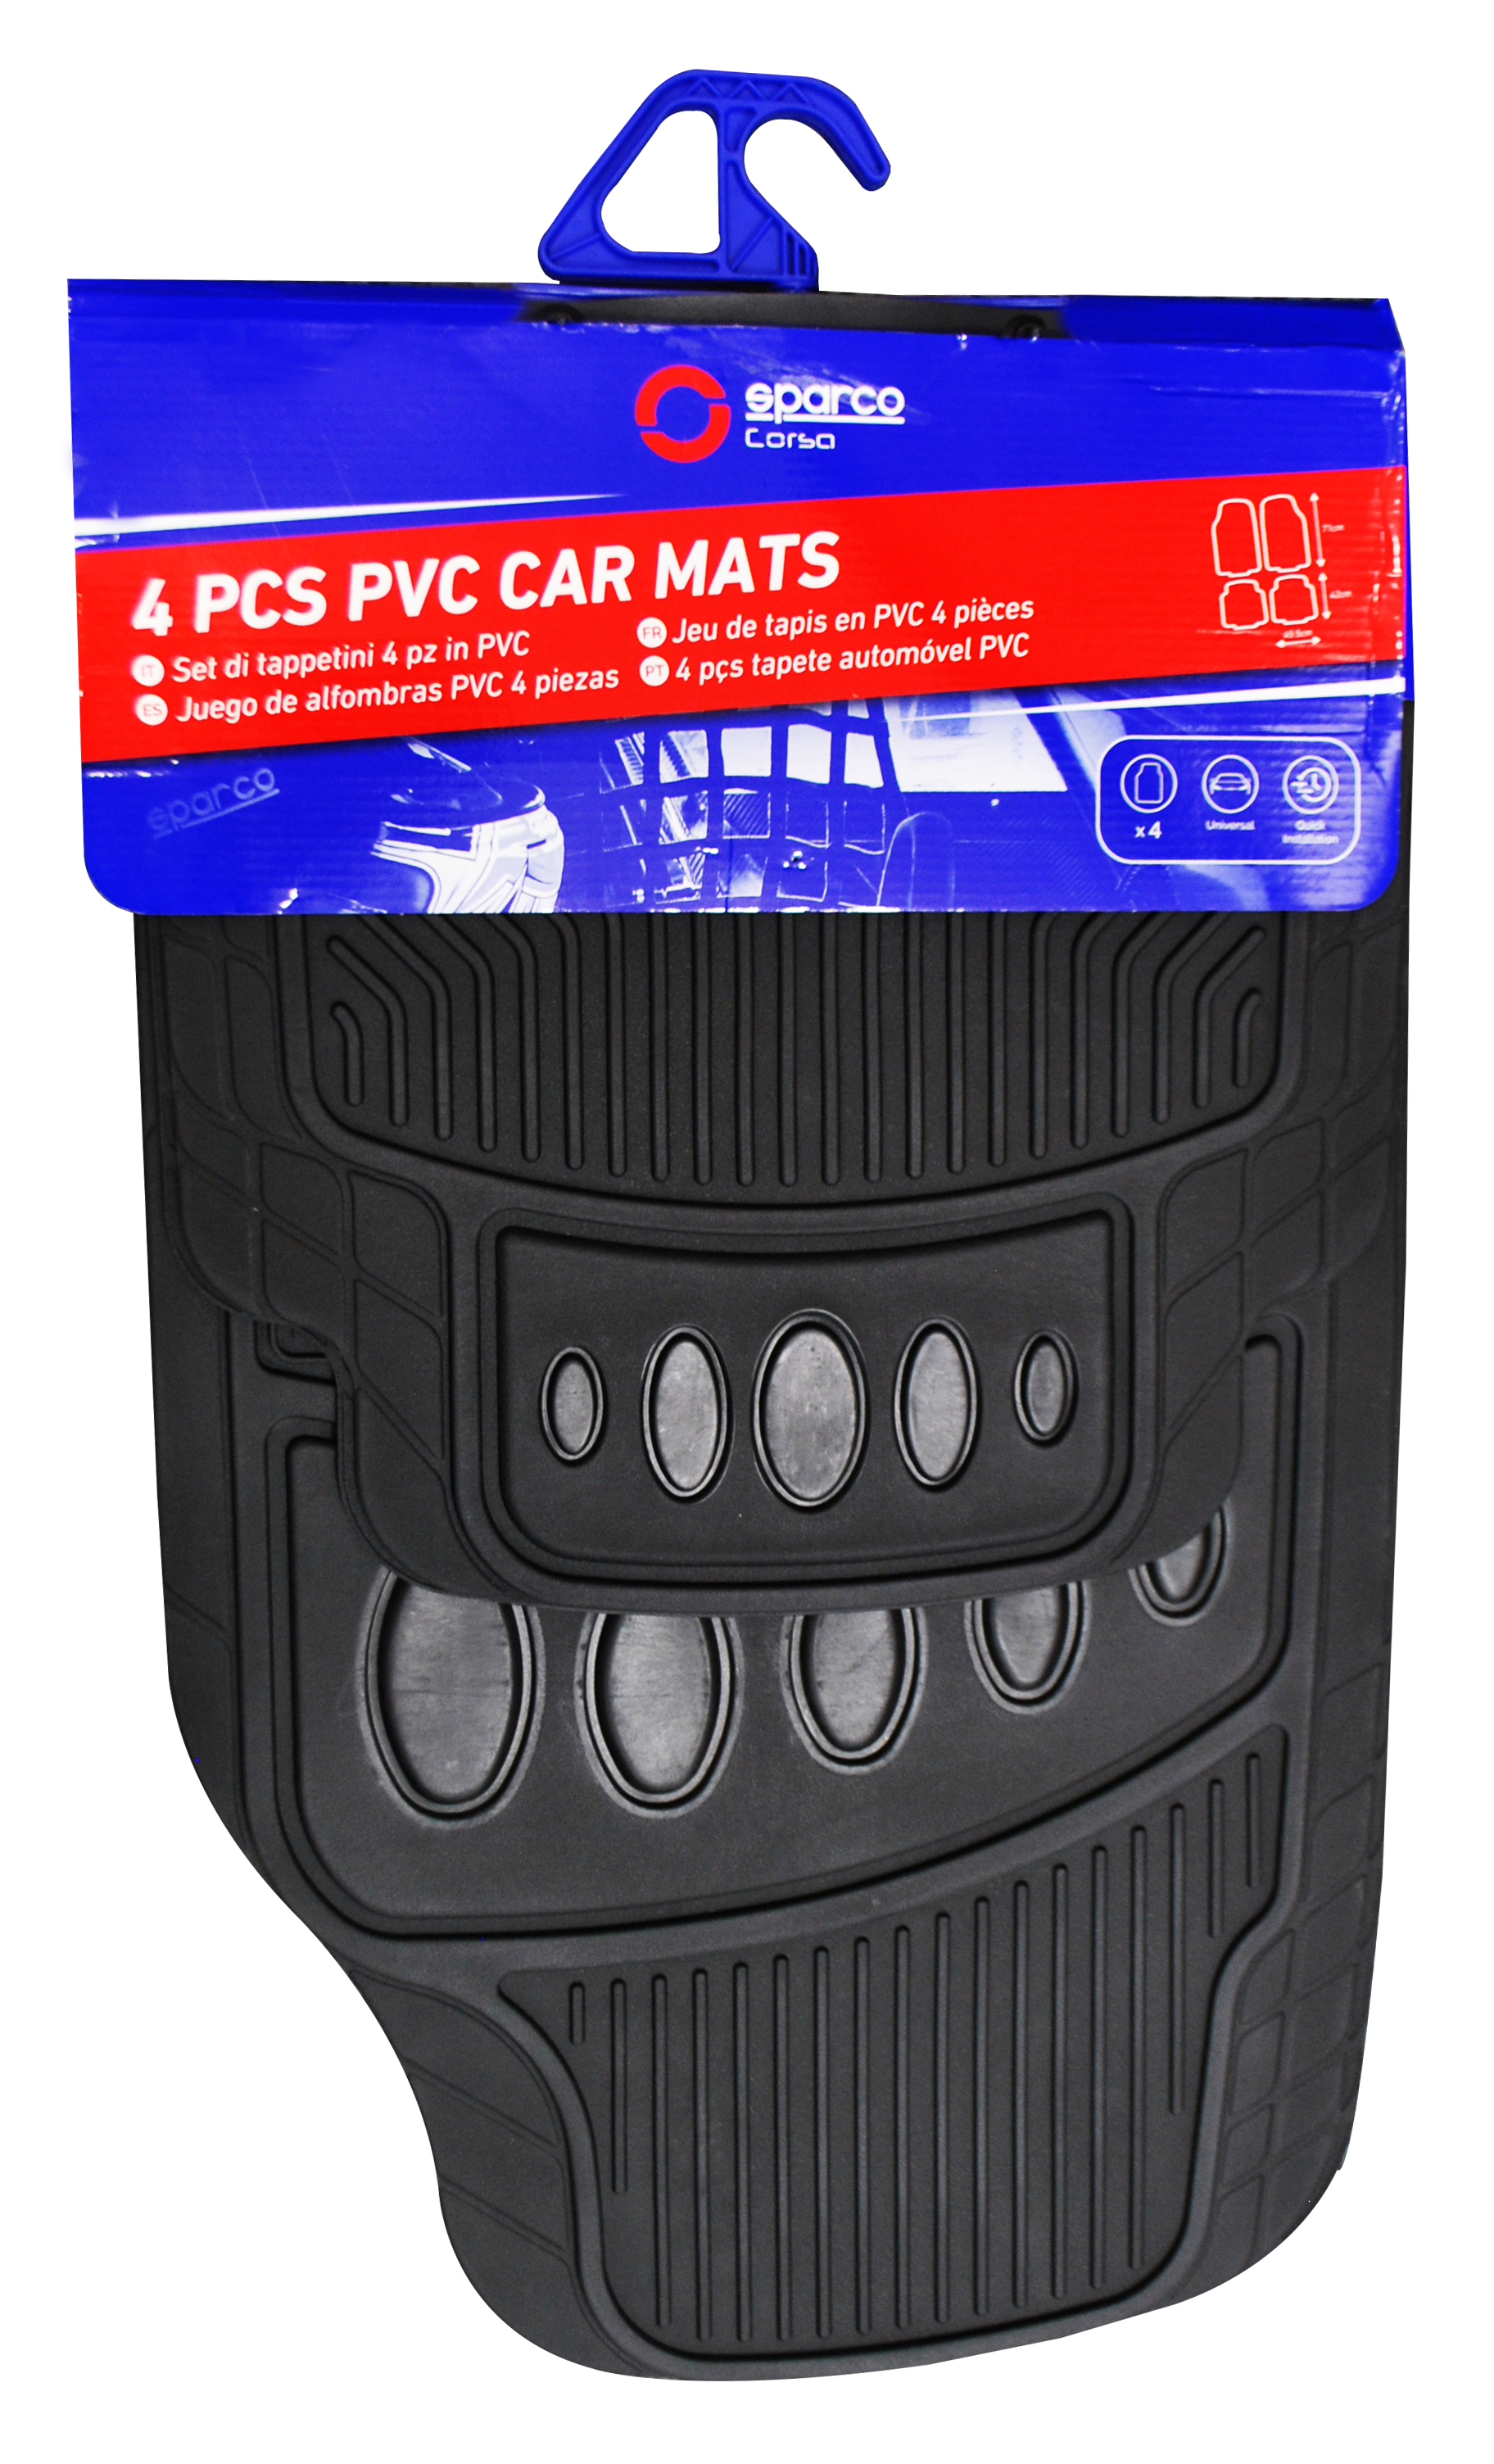 SPARCO CAR MATS PVC BLACK 4PCS -VARESE SPF505BK